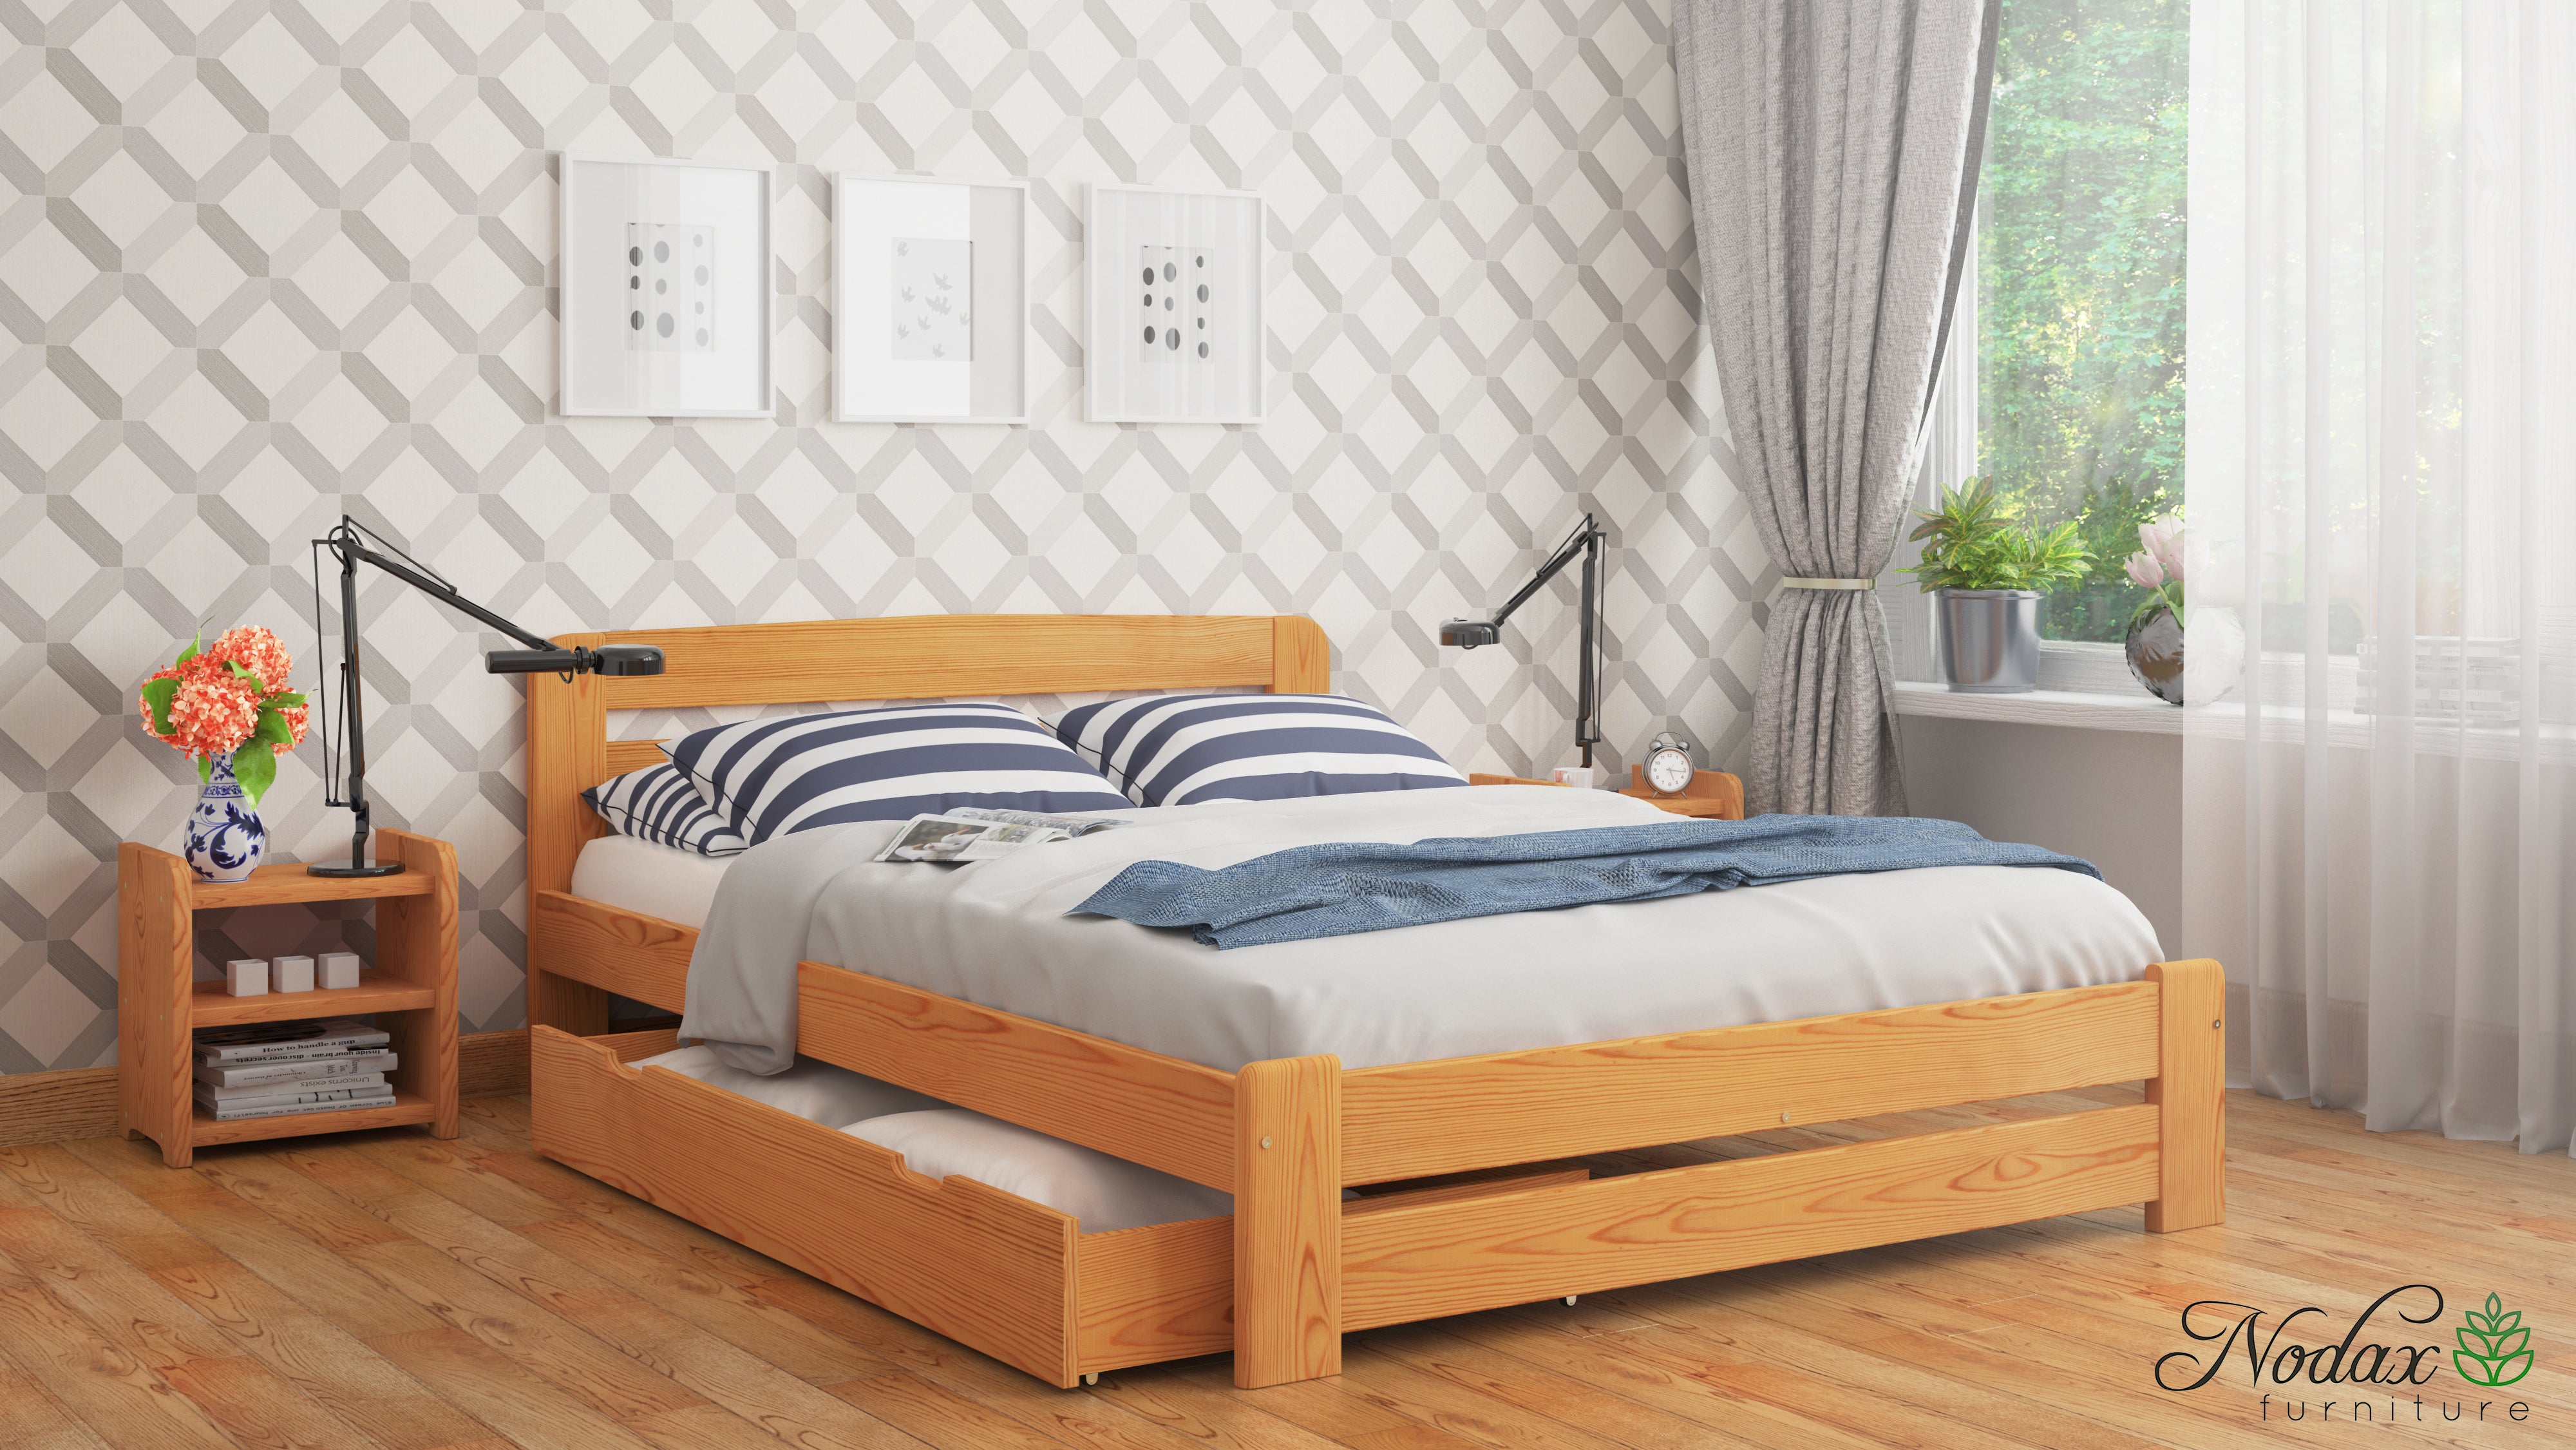 Wooden-bed-frame-Aurora-beds-online-super-king-size